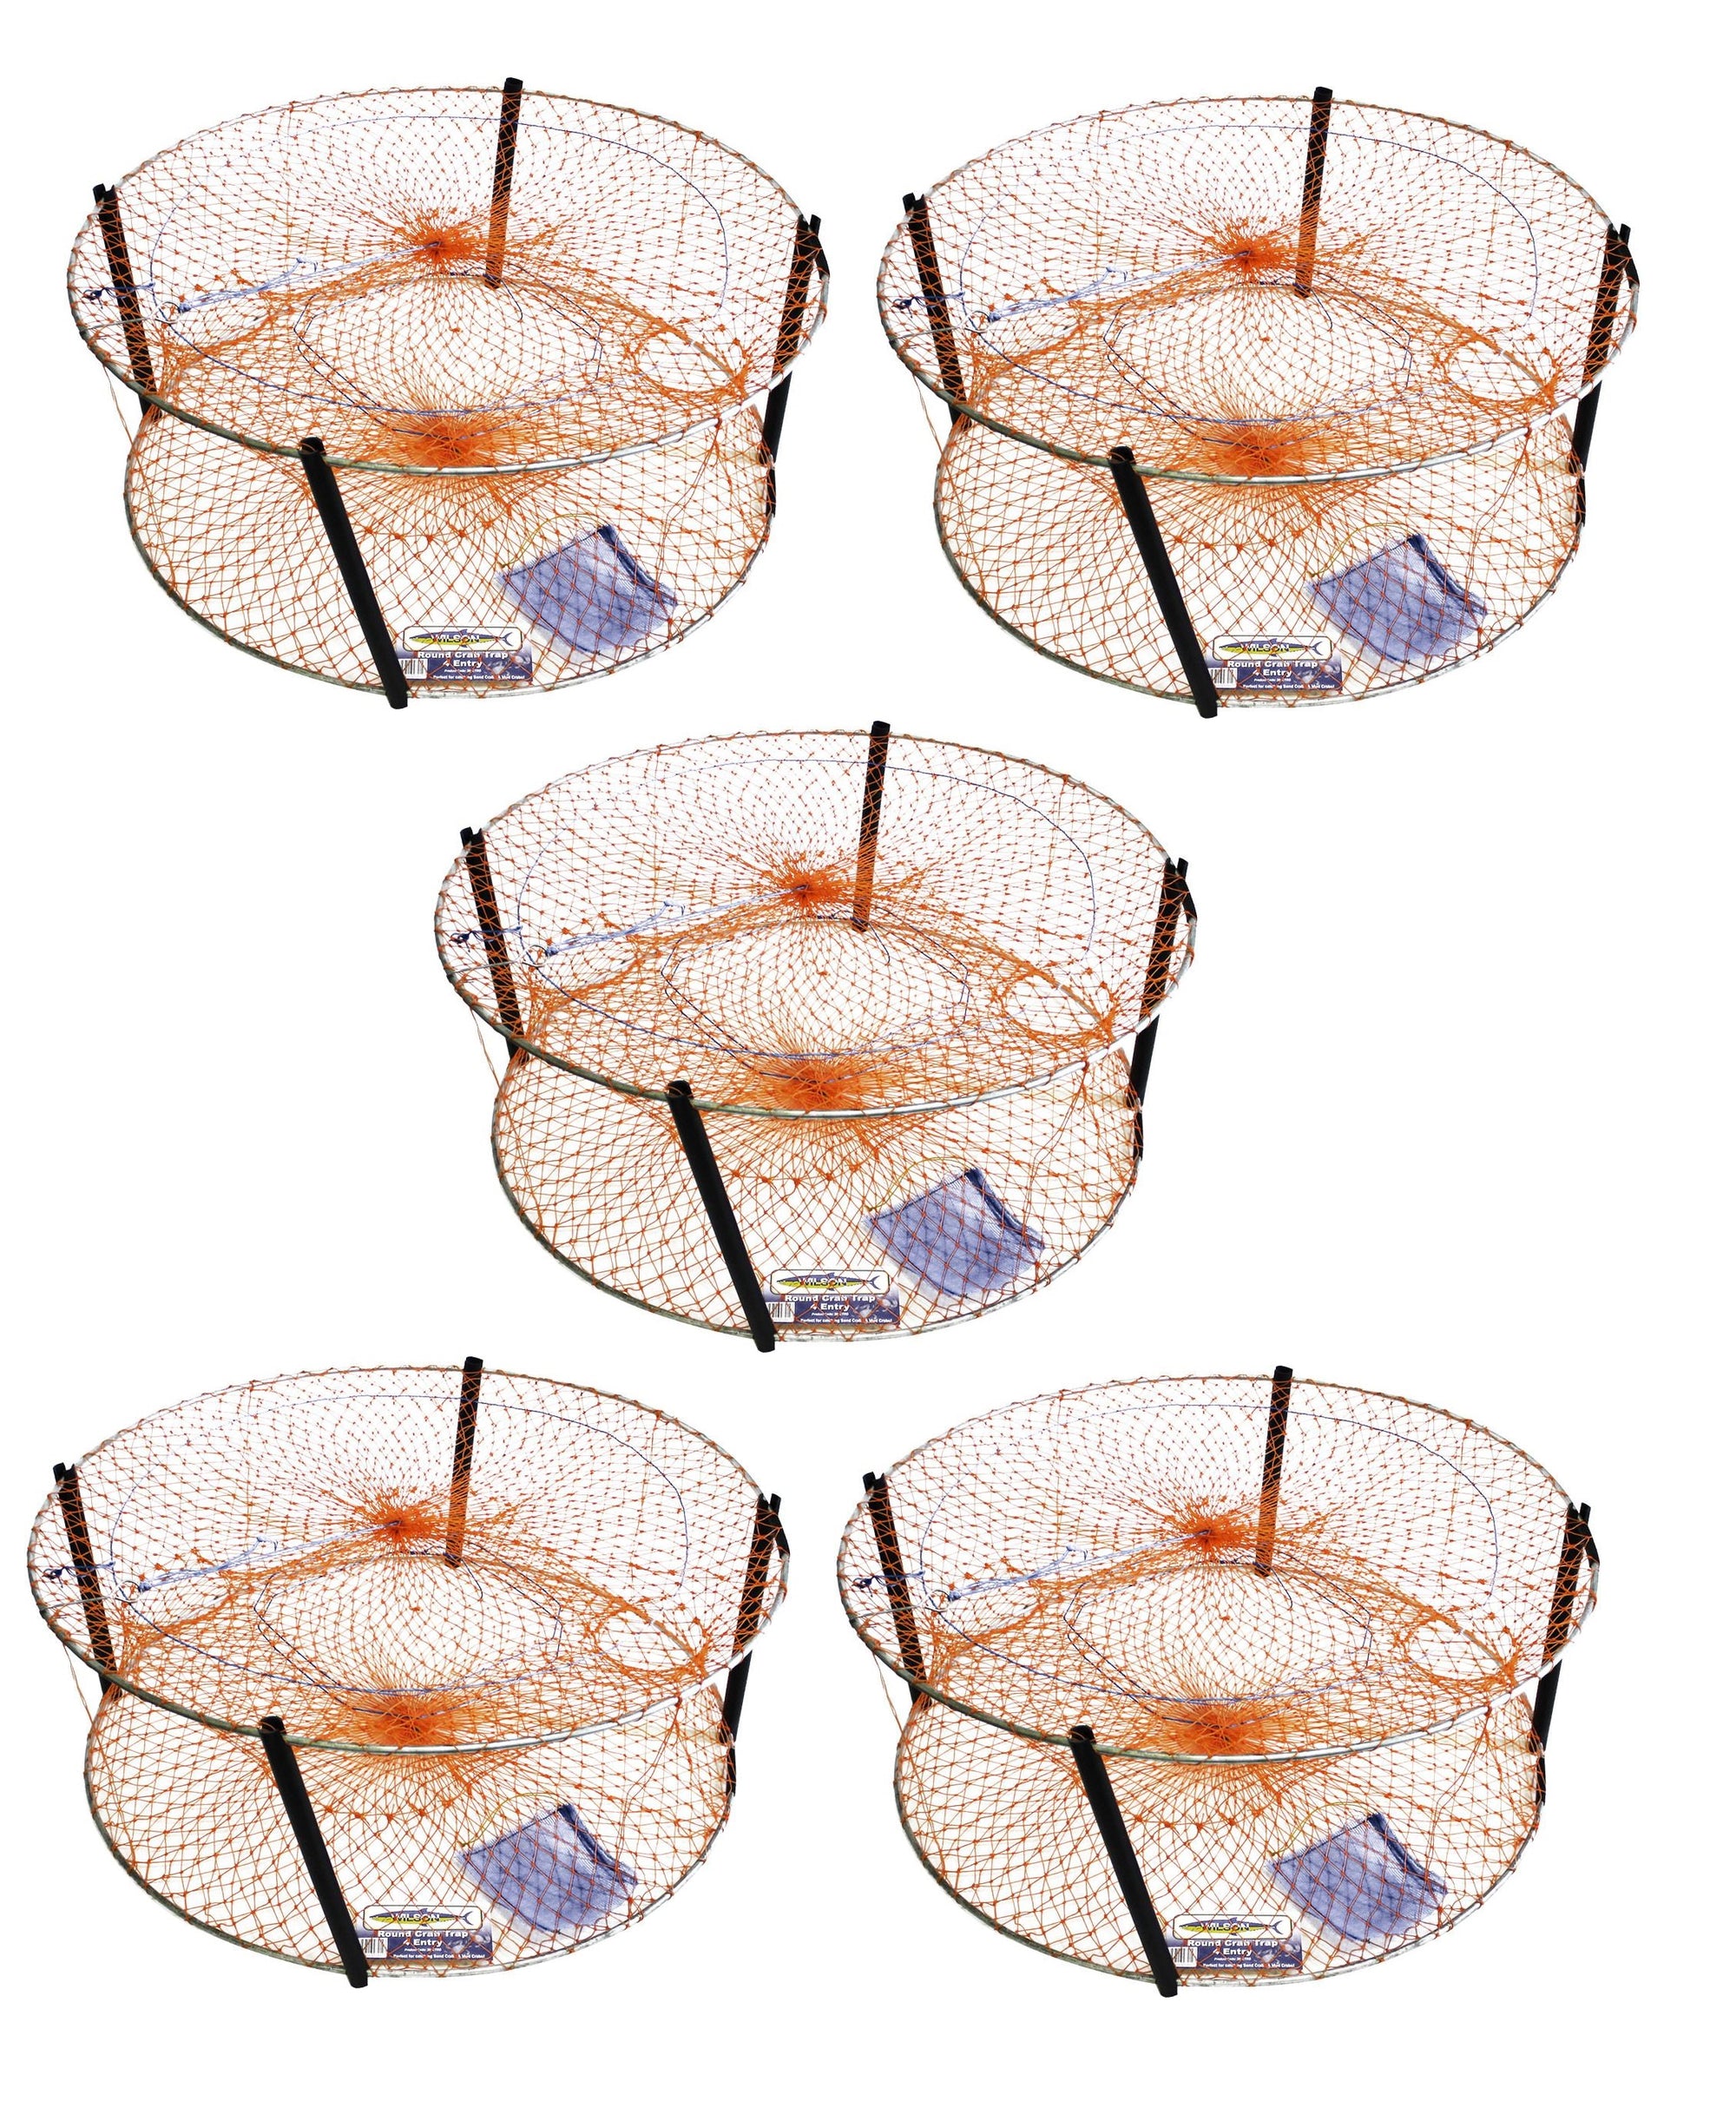 Wilson Standard Crab Trap Round-4 Entry Orange - 5 Pack